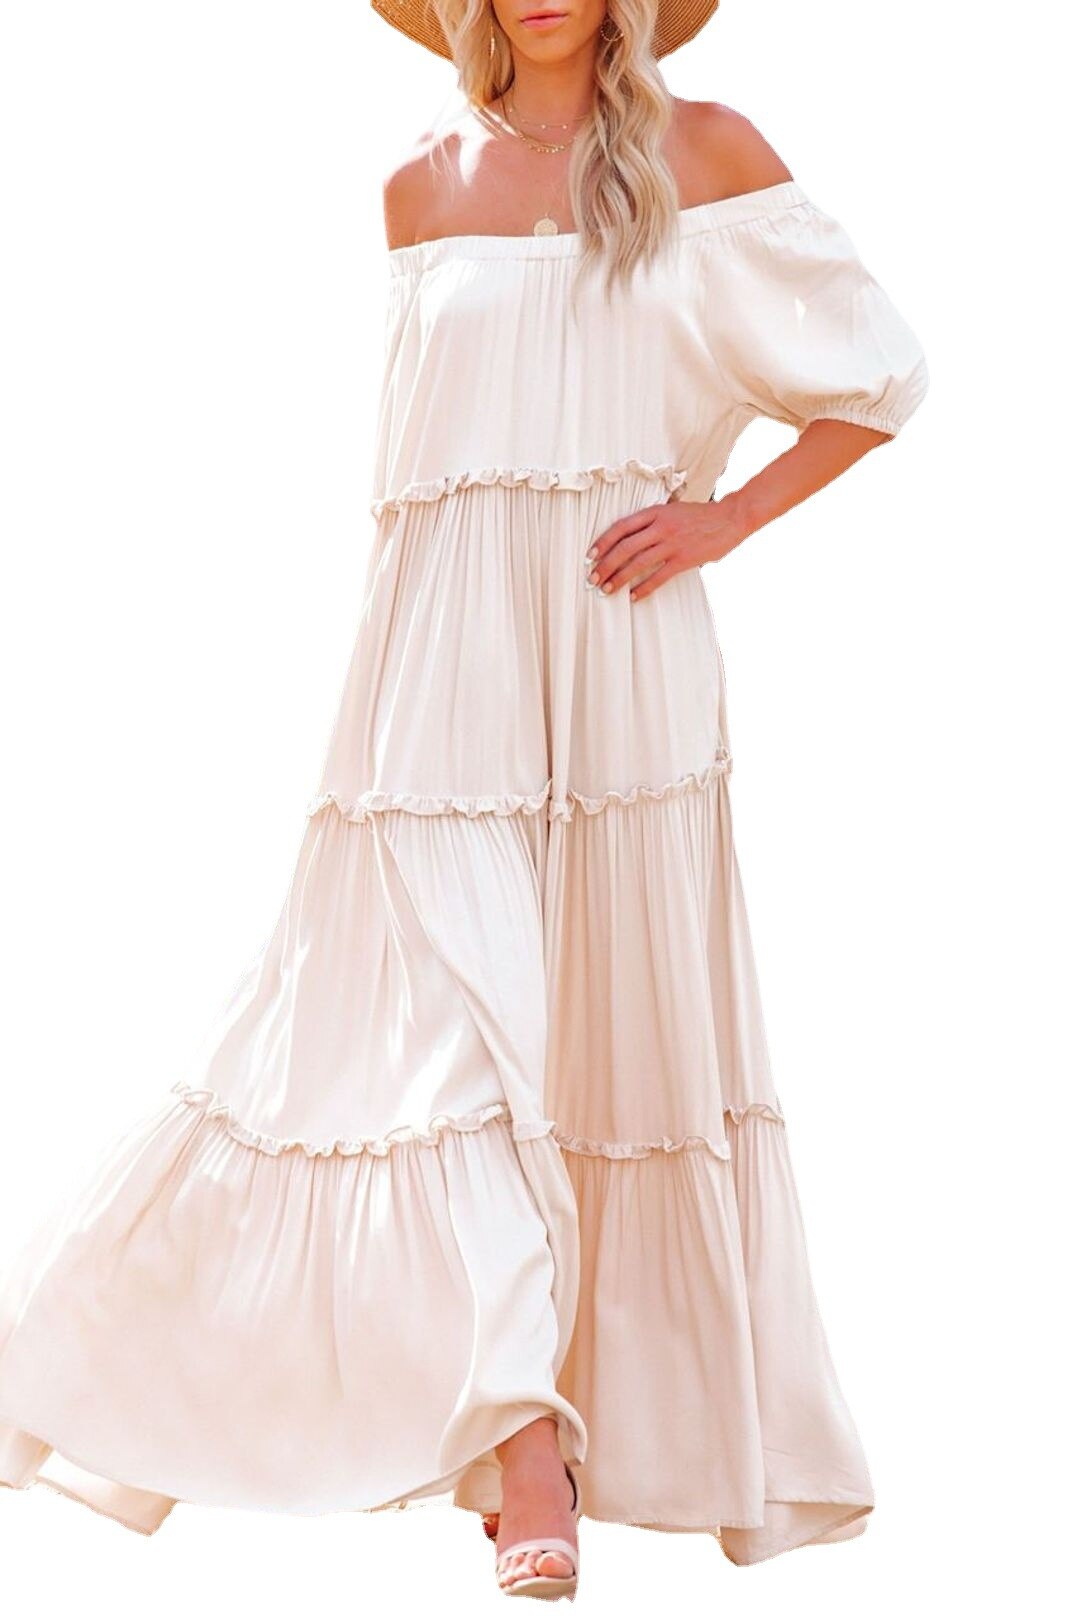 Sexy Off Shoulder Elegant Long Dress Women White High Waist Dresses High Slit Sundress 2023 Summer Beach Holiday Maxi Vestidos